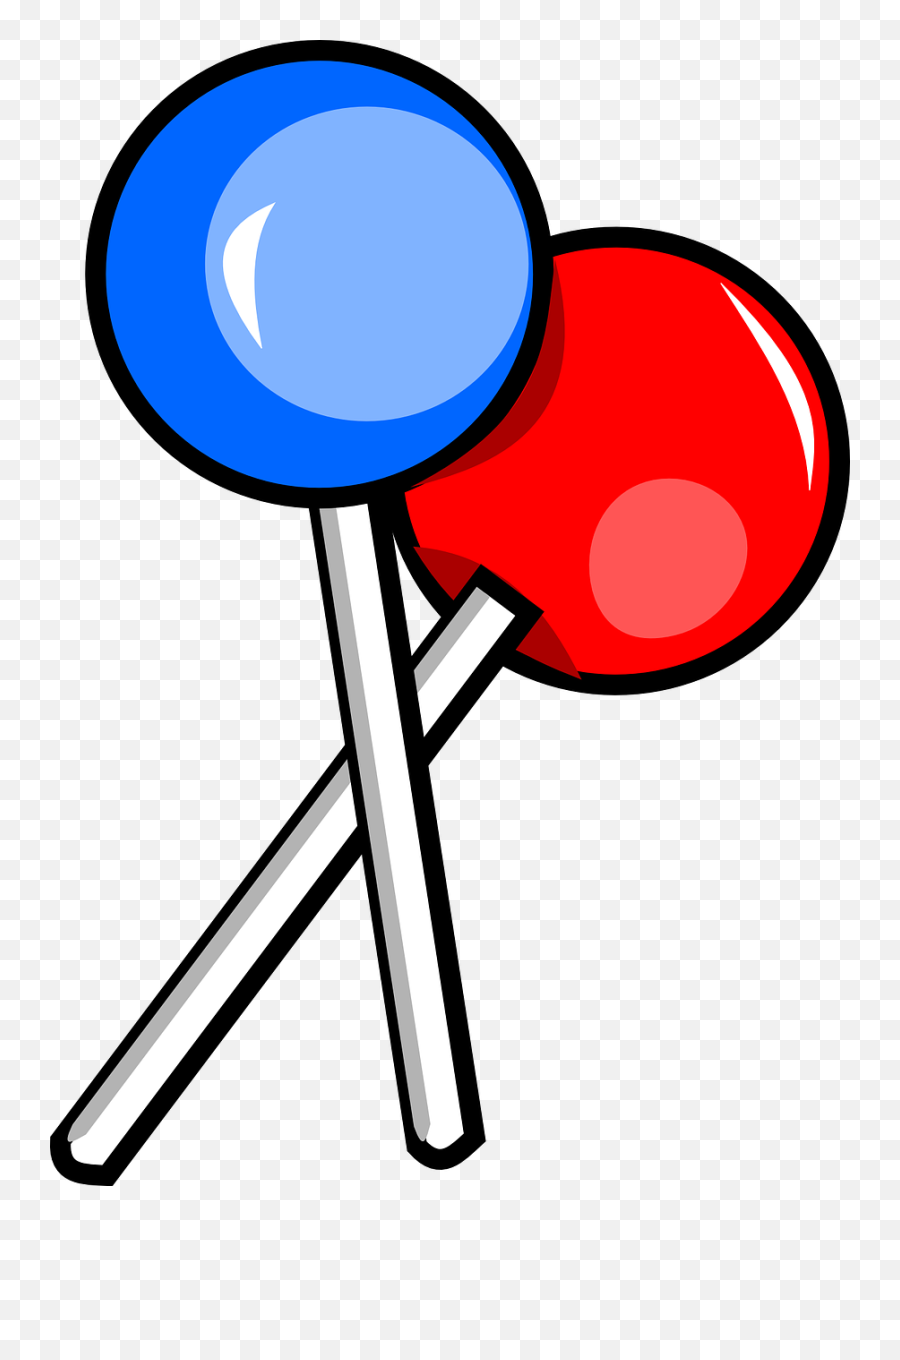 Free Vector Graphic Lollipops Blue Red Candy Cute Cliparts - Lollipop Clip Art Png,Lollipop Transparent